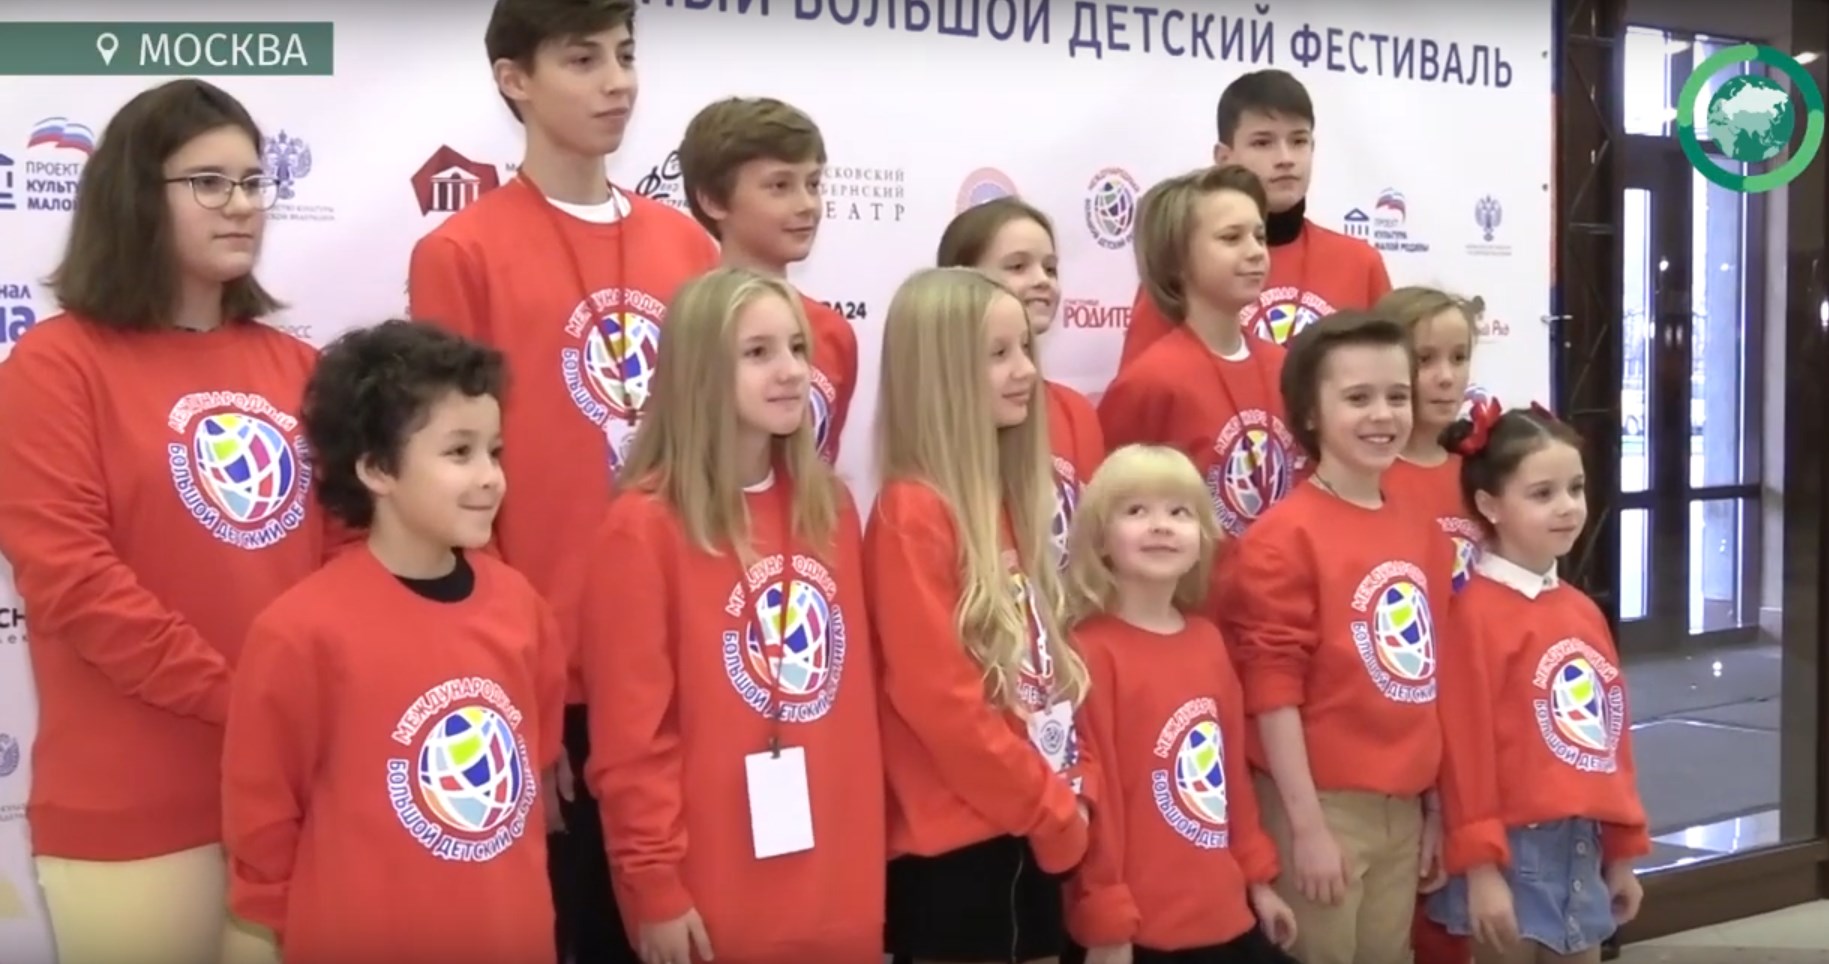 II Международный Большой детский фестиваль открылся в Москве. ФАН-ТВ